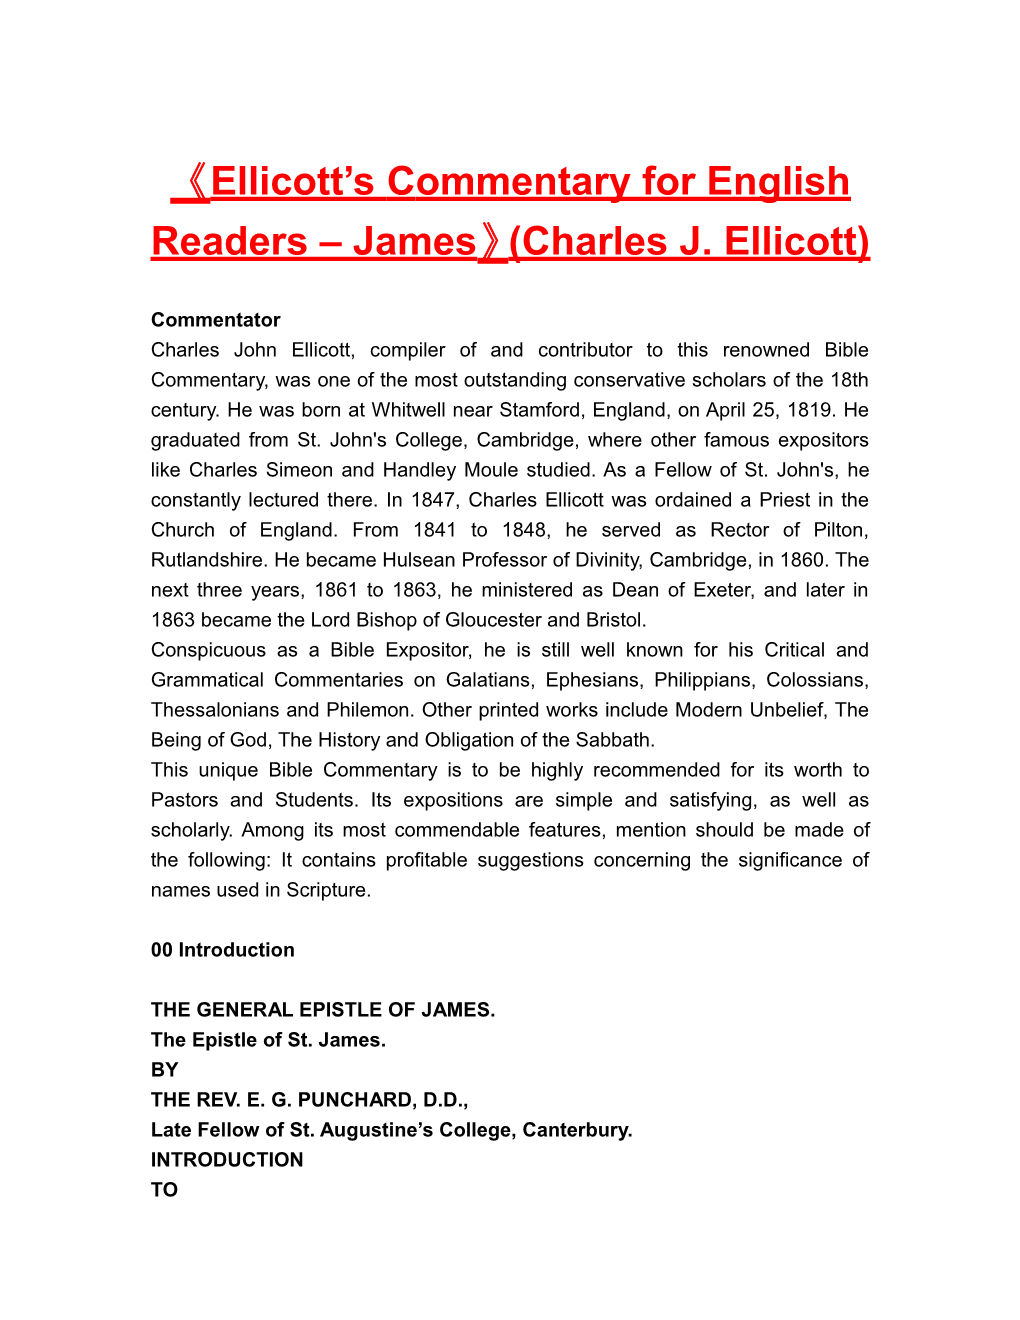 Ellicott Scommentary for English Readers James (Charles J. Ellicott)